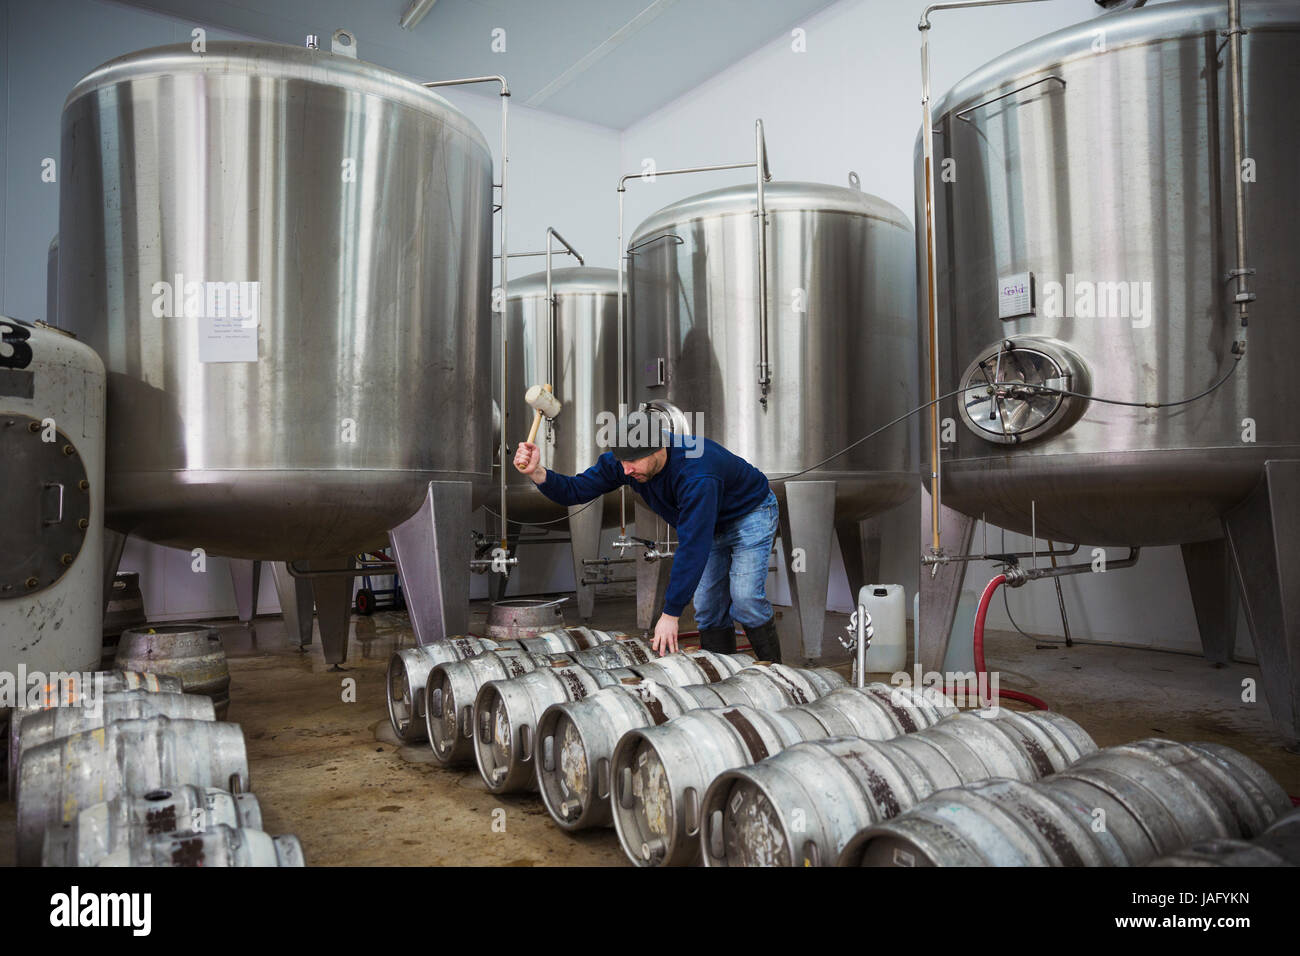 Uomo in piedi accanto a una fila di metallo barili di birra, il loro riempimento con birra da i serbatoi di fermentazione. Foto Stock